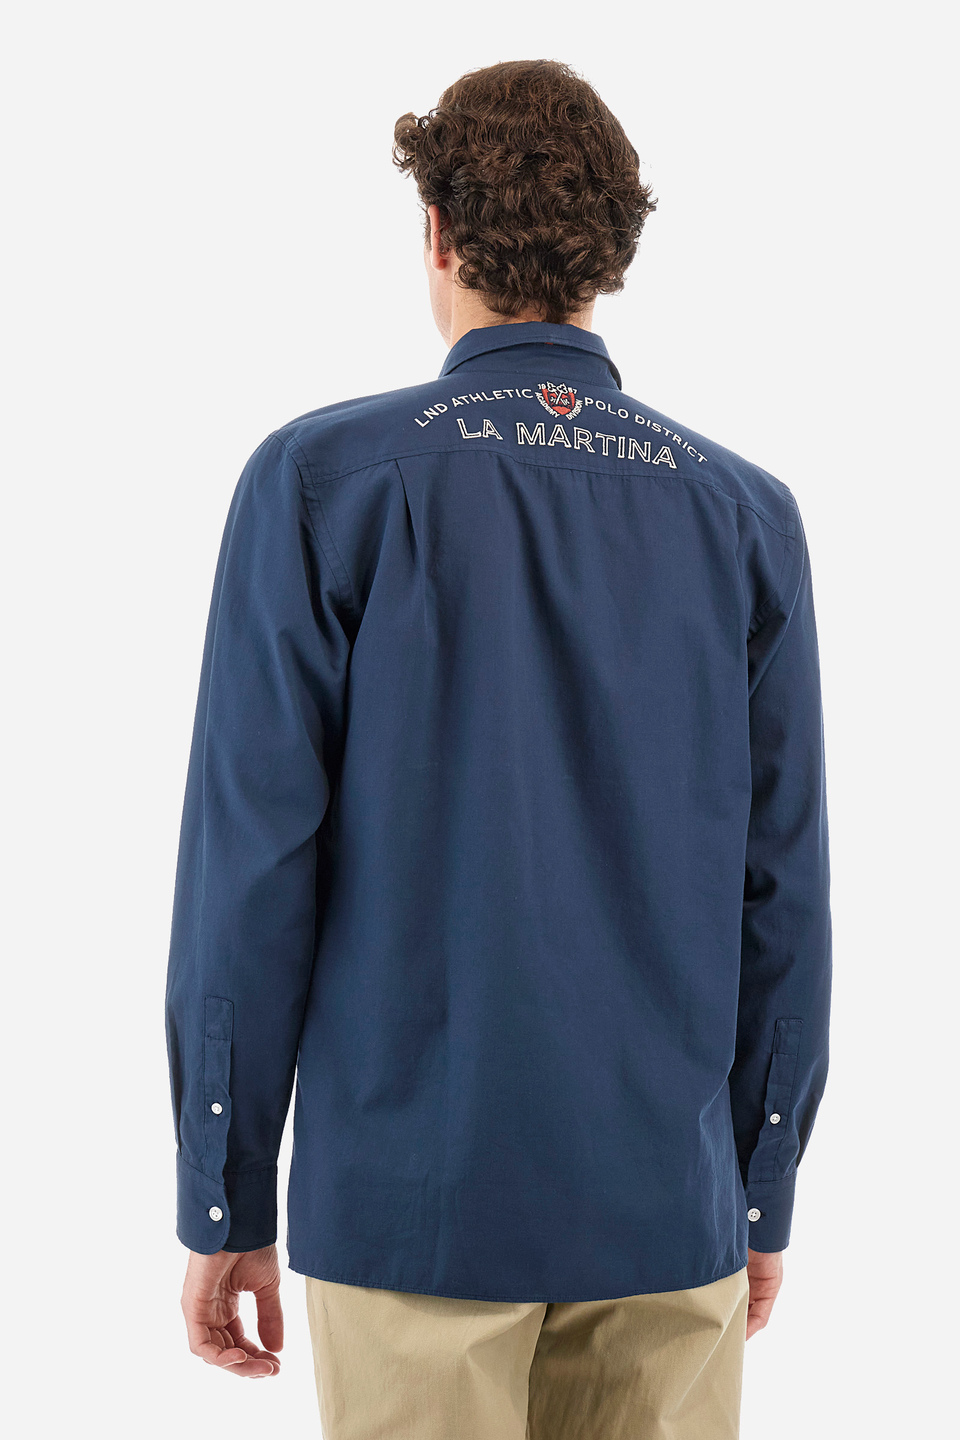 Camisa de hombre de corte recto - Yamino | La Martina - Official Online Shop